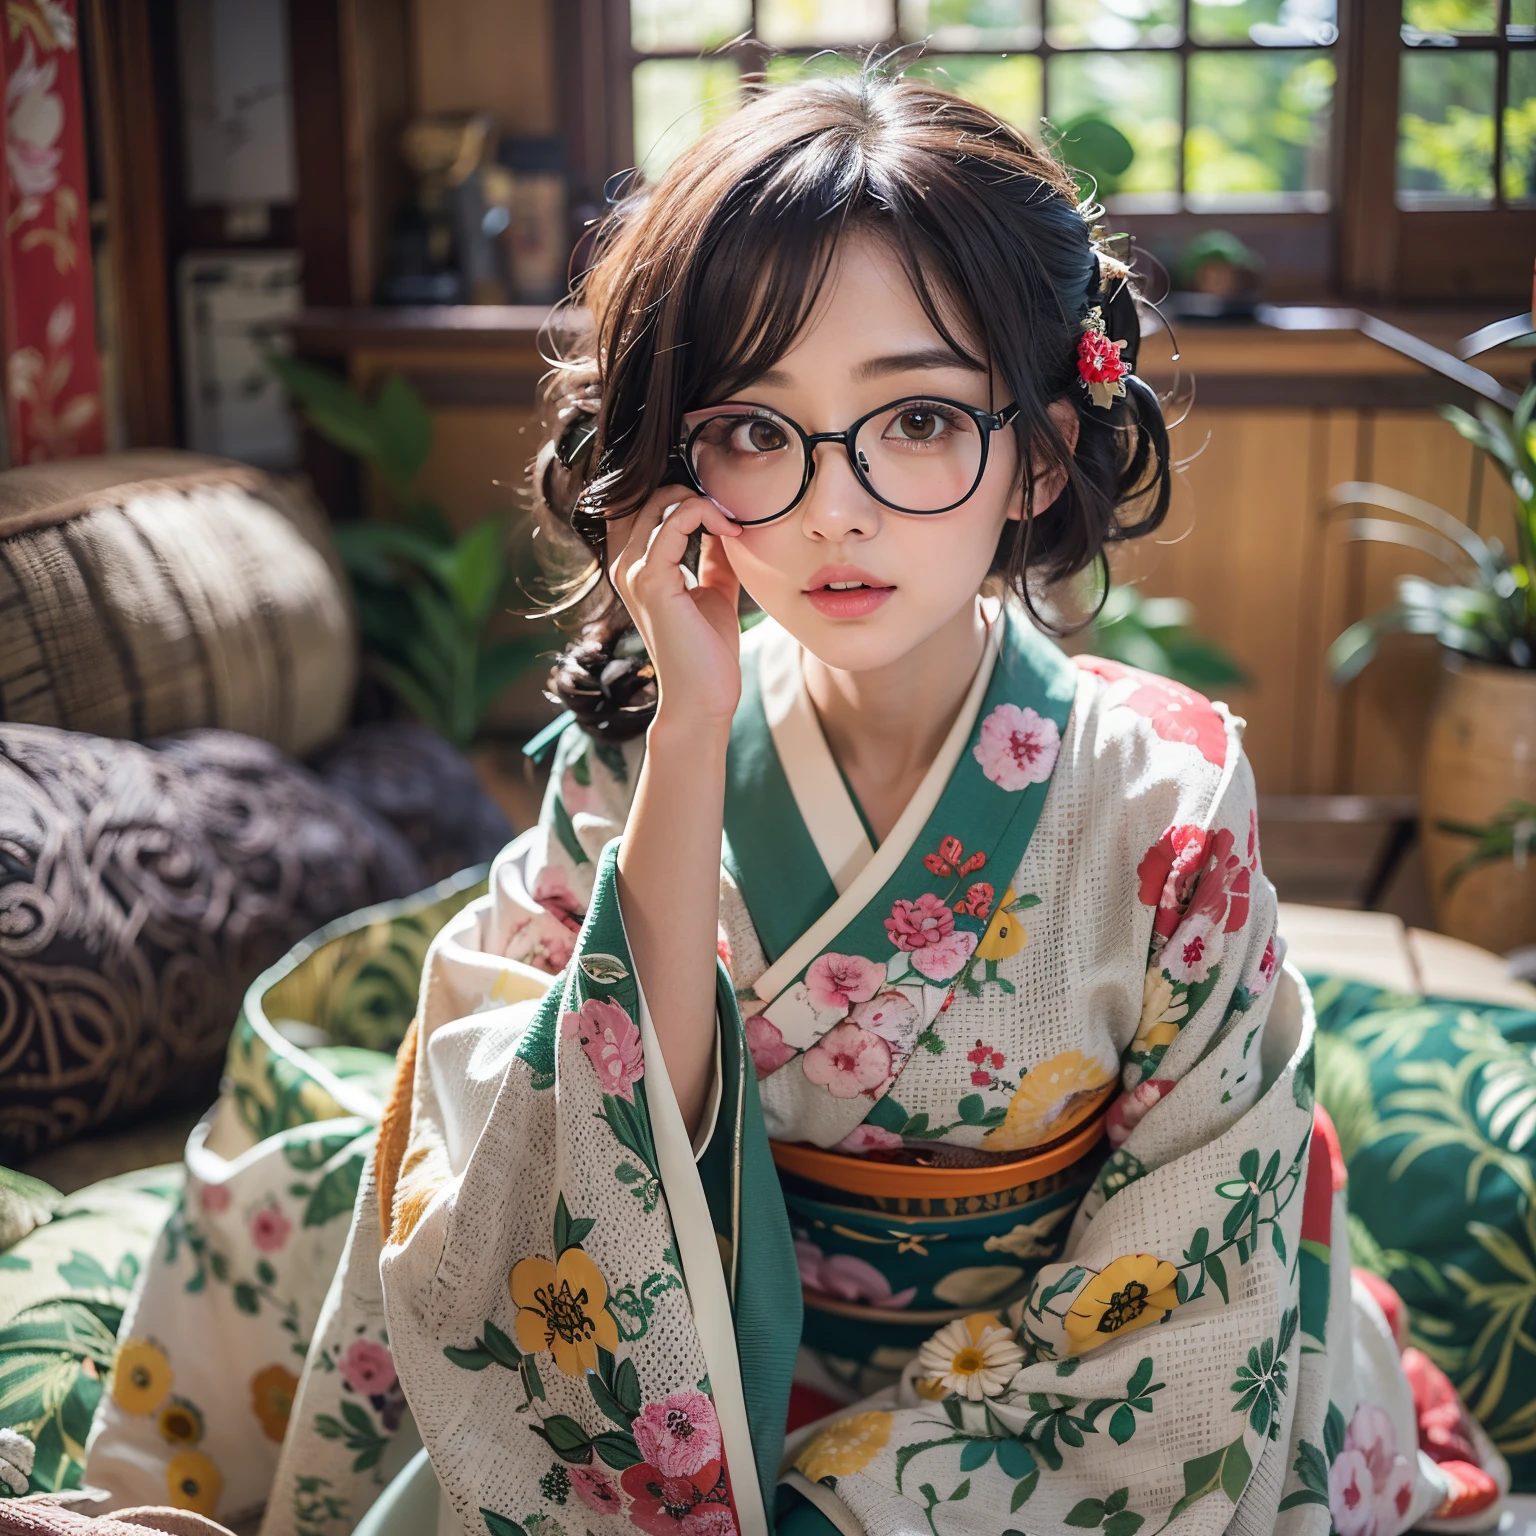 最好的品質, 傑作, 超高解析度, (逼真的:1.4), 原始照片, 極度細節, 完美的解剖學, 1個女孩, 最受歡迎的日本模特, 穿著日本和服，戴著設計可愛的眼鏡, 傳統日文的 SEIZA 坐姿,房間, 身體前傾, 非常漂亮的臉，就像最著名的日本模特兒一樣, 令人驚嘆的美麗黑色實心圓眼睛, 非常漂亮逼真的肌膚, 非常漂亮的黑色短髮, 非常美麗的大乳房, 非常美麗的乳溝, 細緻的日本和服, 设计可爱的精致眼镜, 詳細美麗的臉, 細緻的眼睛, 細緻逼真的肌膚, 細緻的黑色短髮, 詳細的大乳房, 細緻的乳溝, detailed traditional Japanese 房間